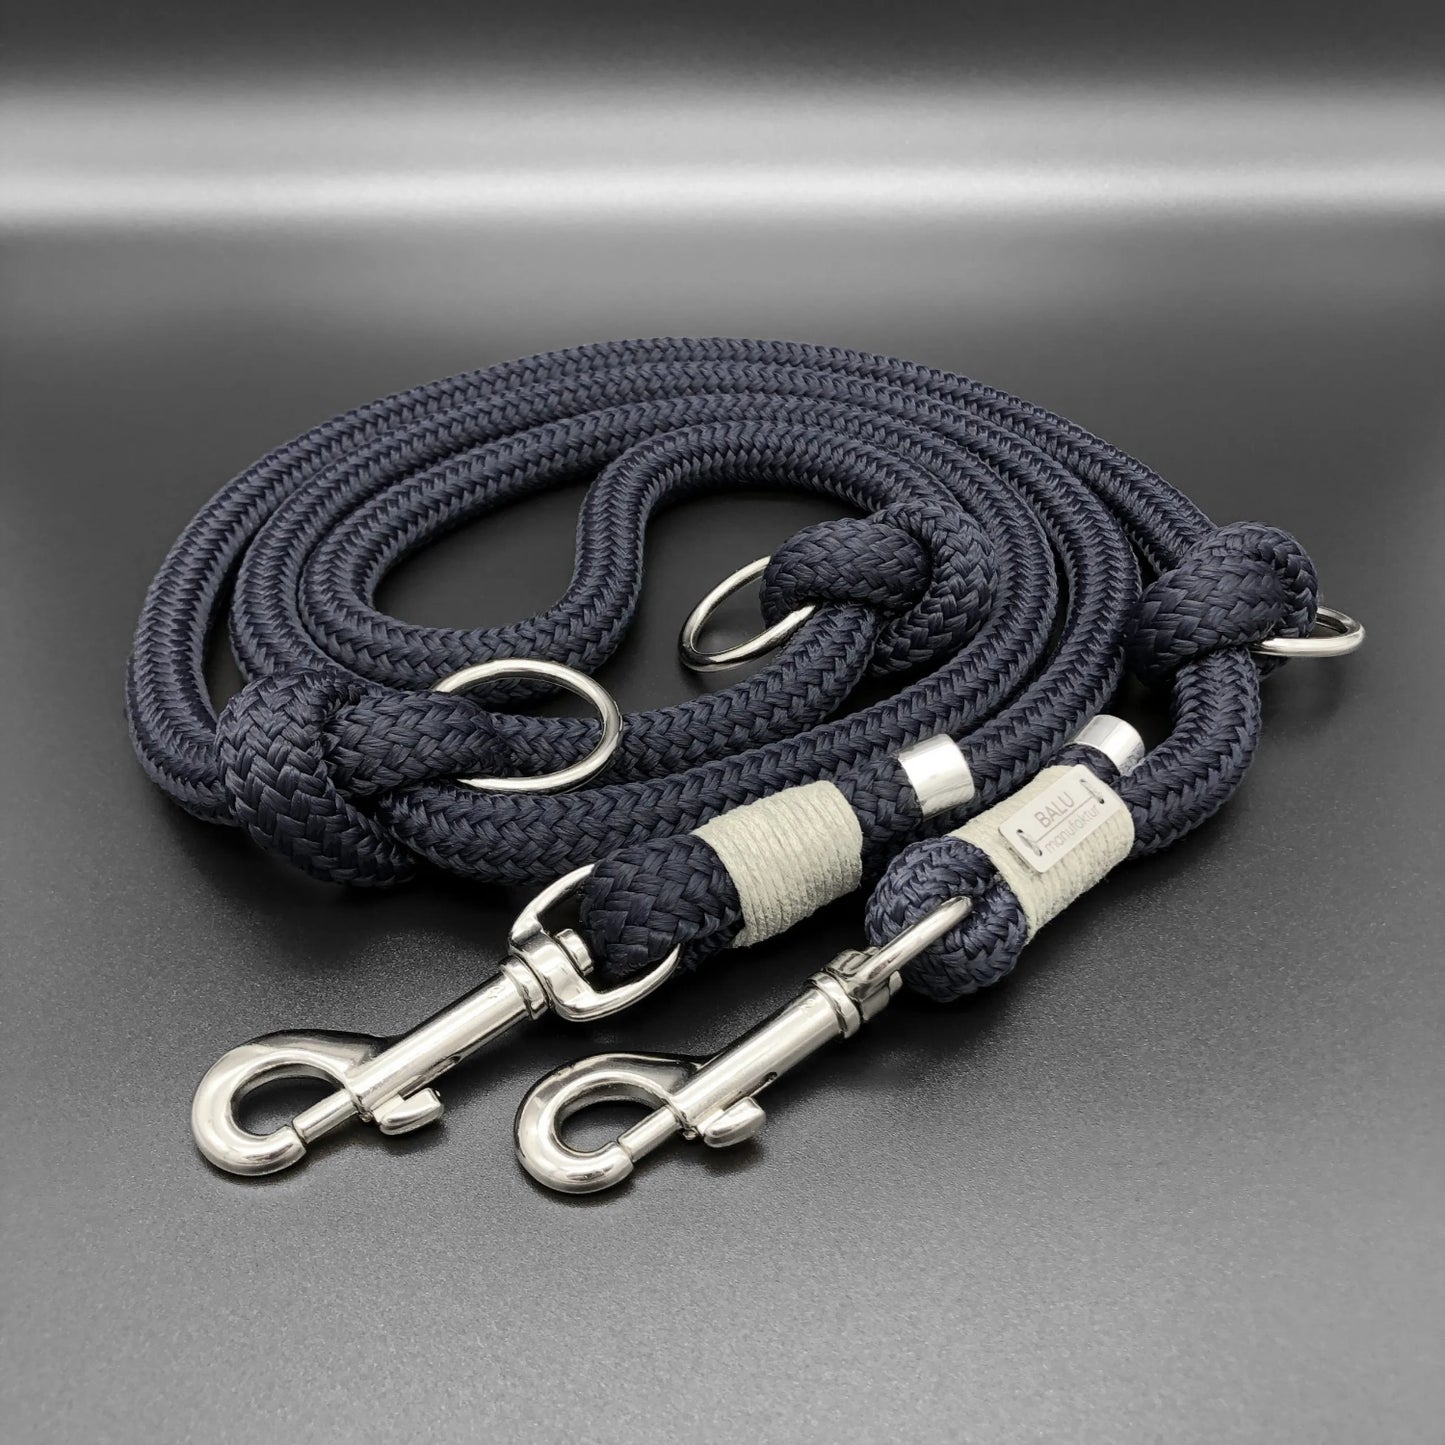 Verstellbare Hundeleine aus Seil 2m in dunkelblau mit silbernen Metallelementen